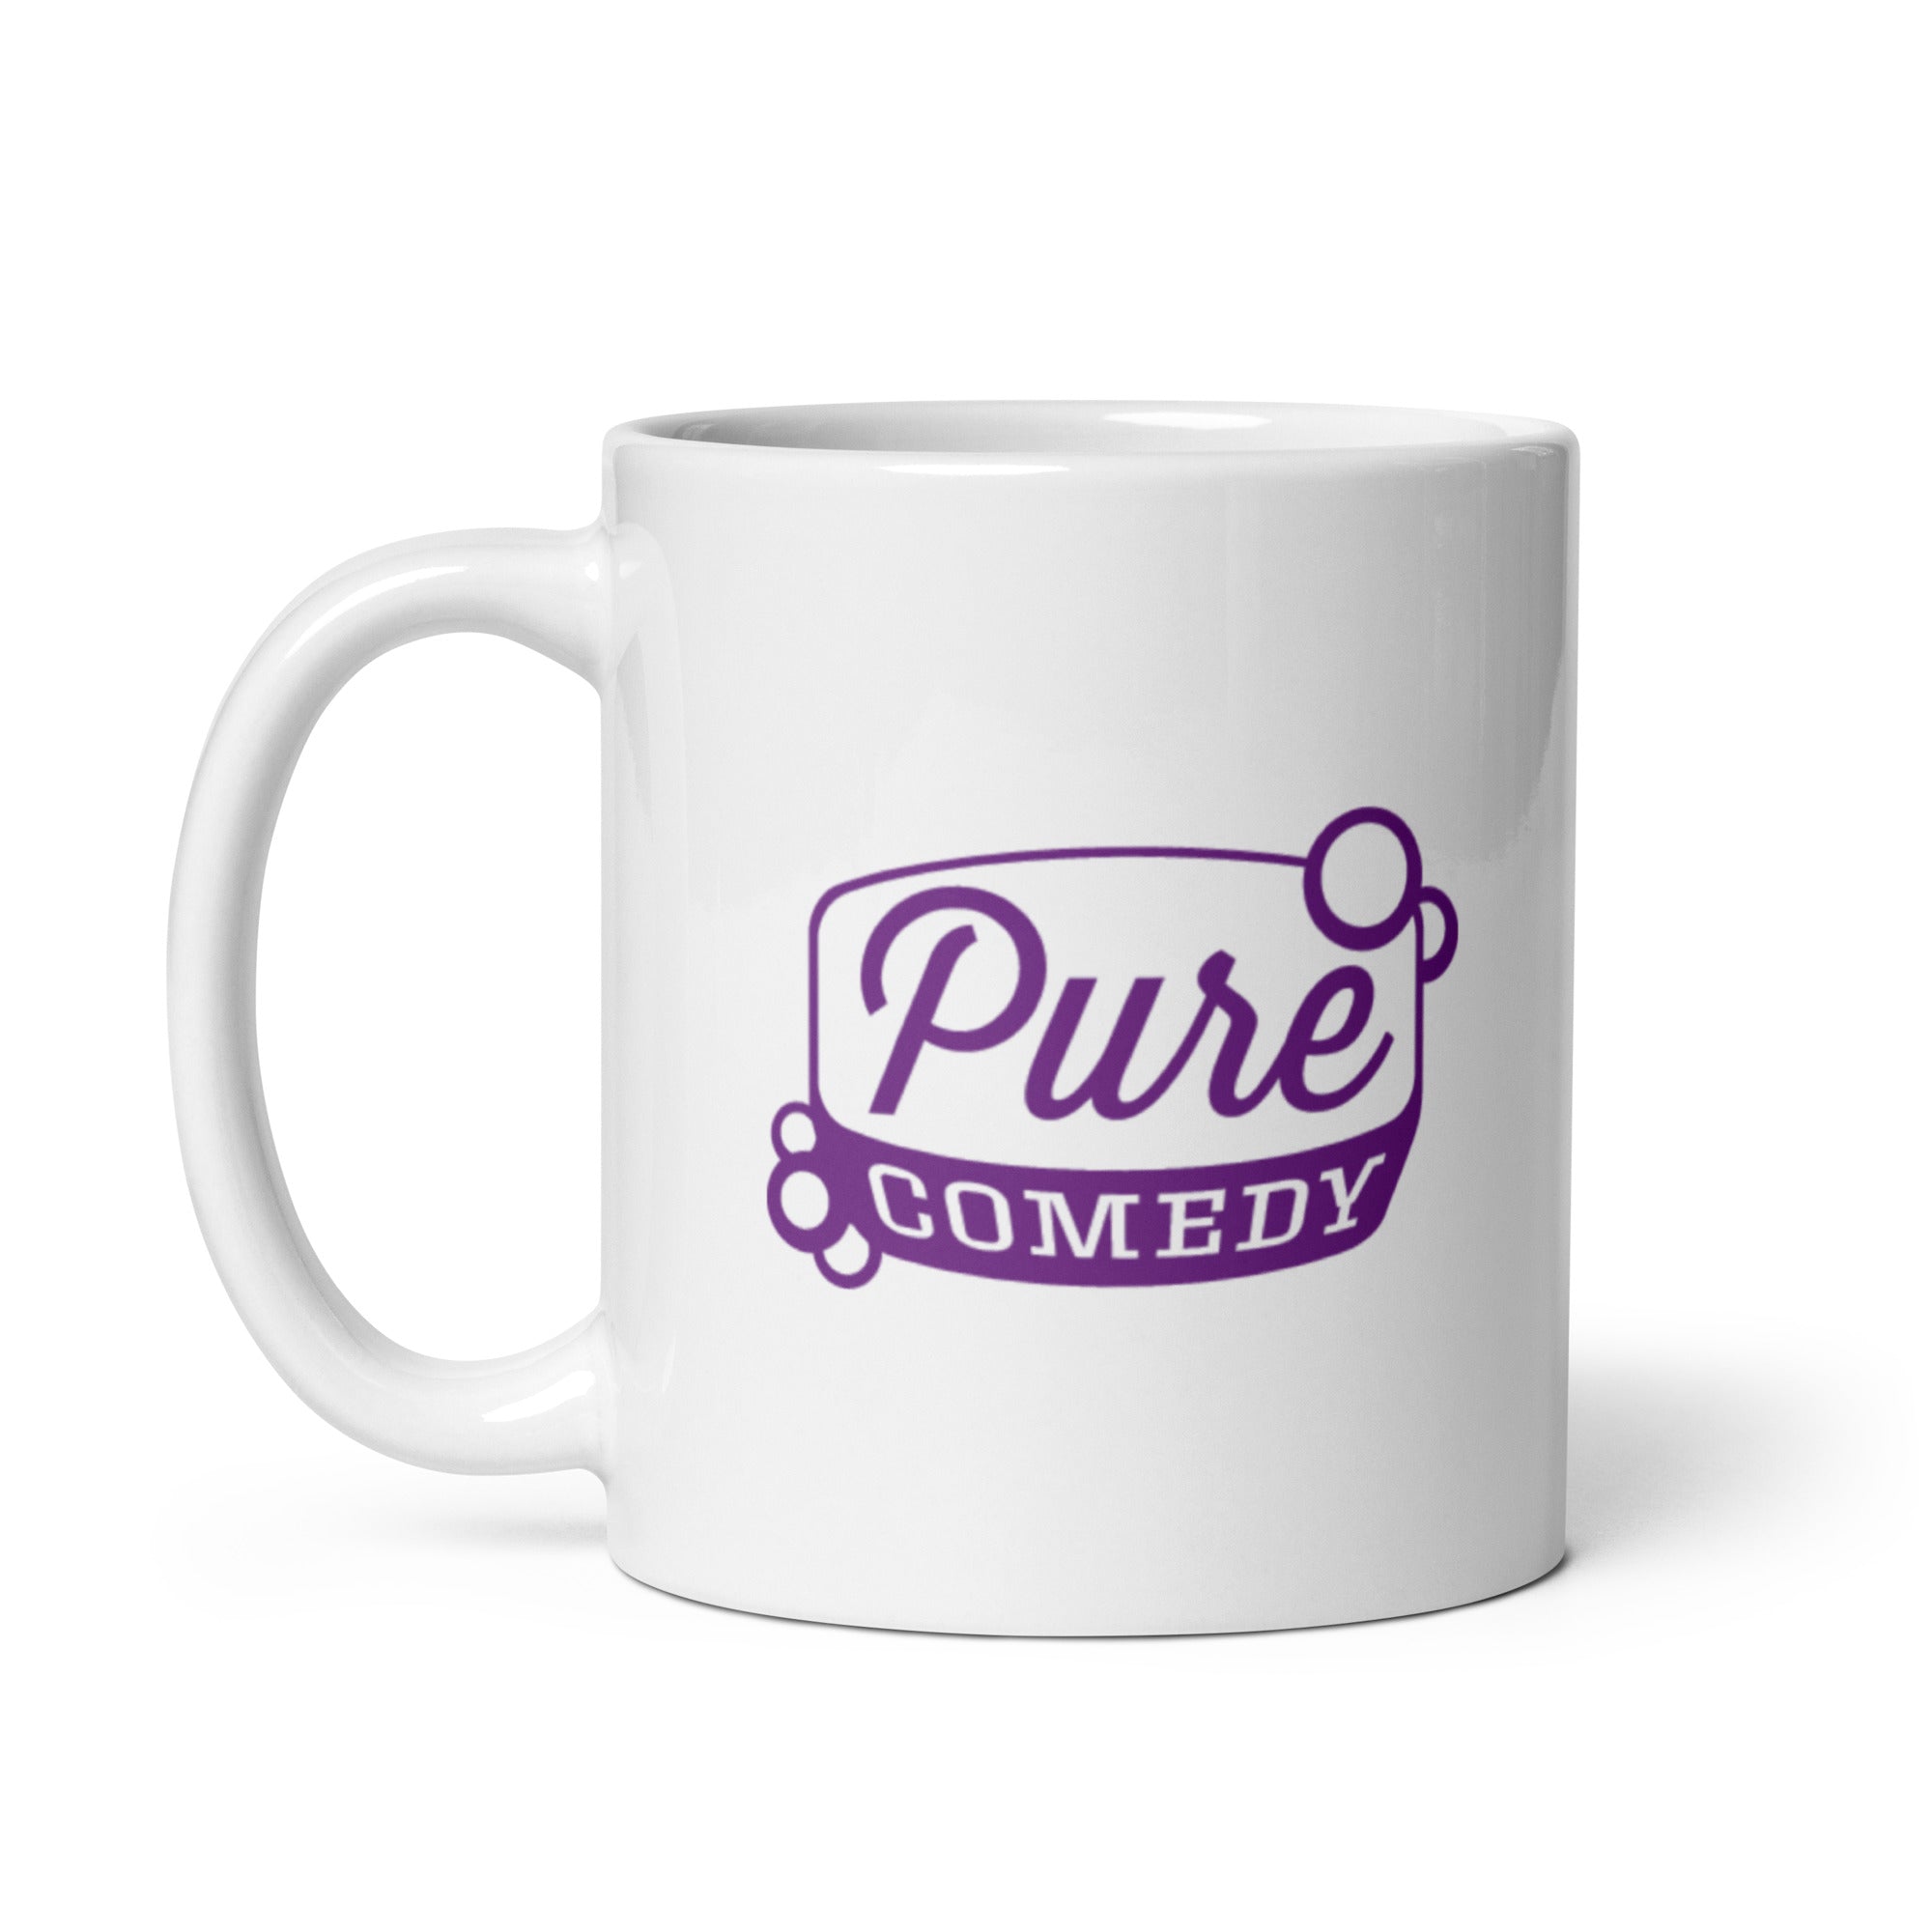 Pure Comedy: Mug